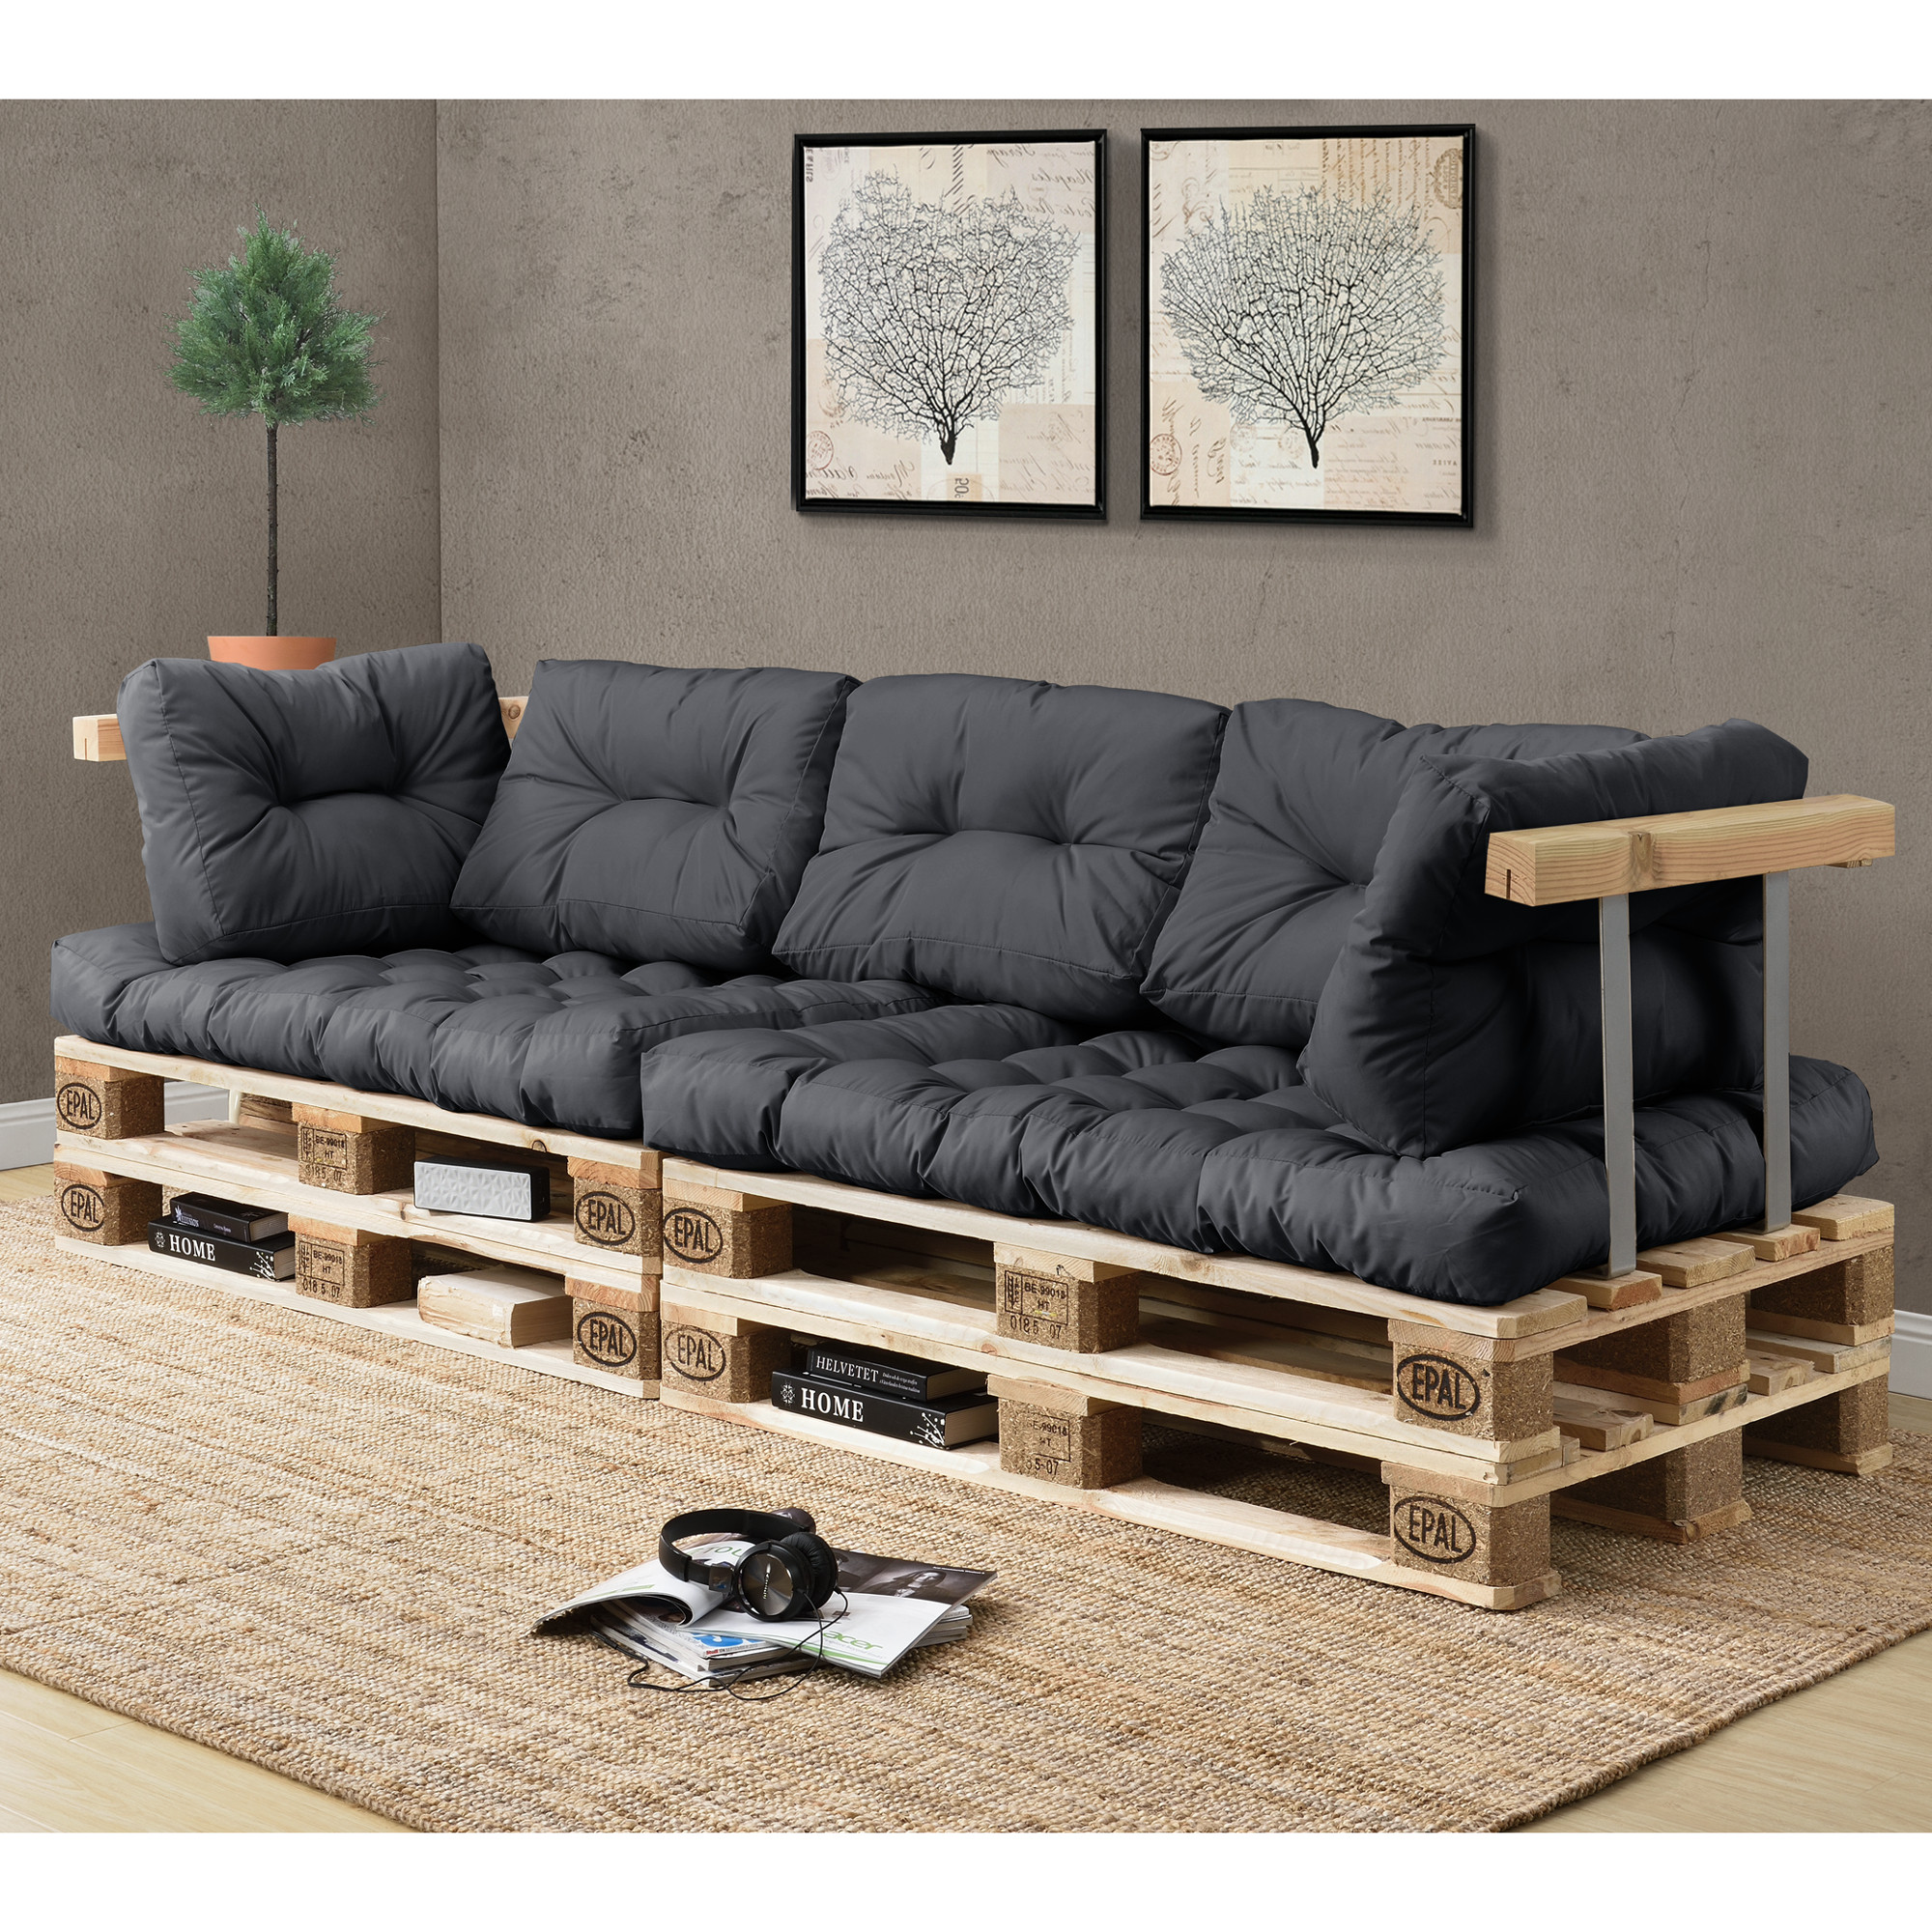 Couch Paletten
 [ensa] Palettenkissen In Outdoor Paletten Kissen Sofa